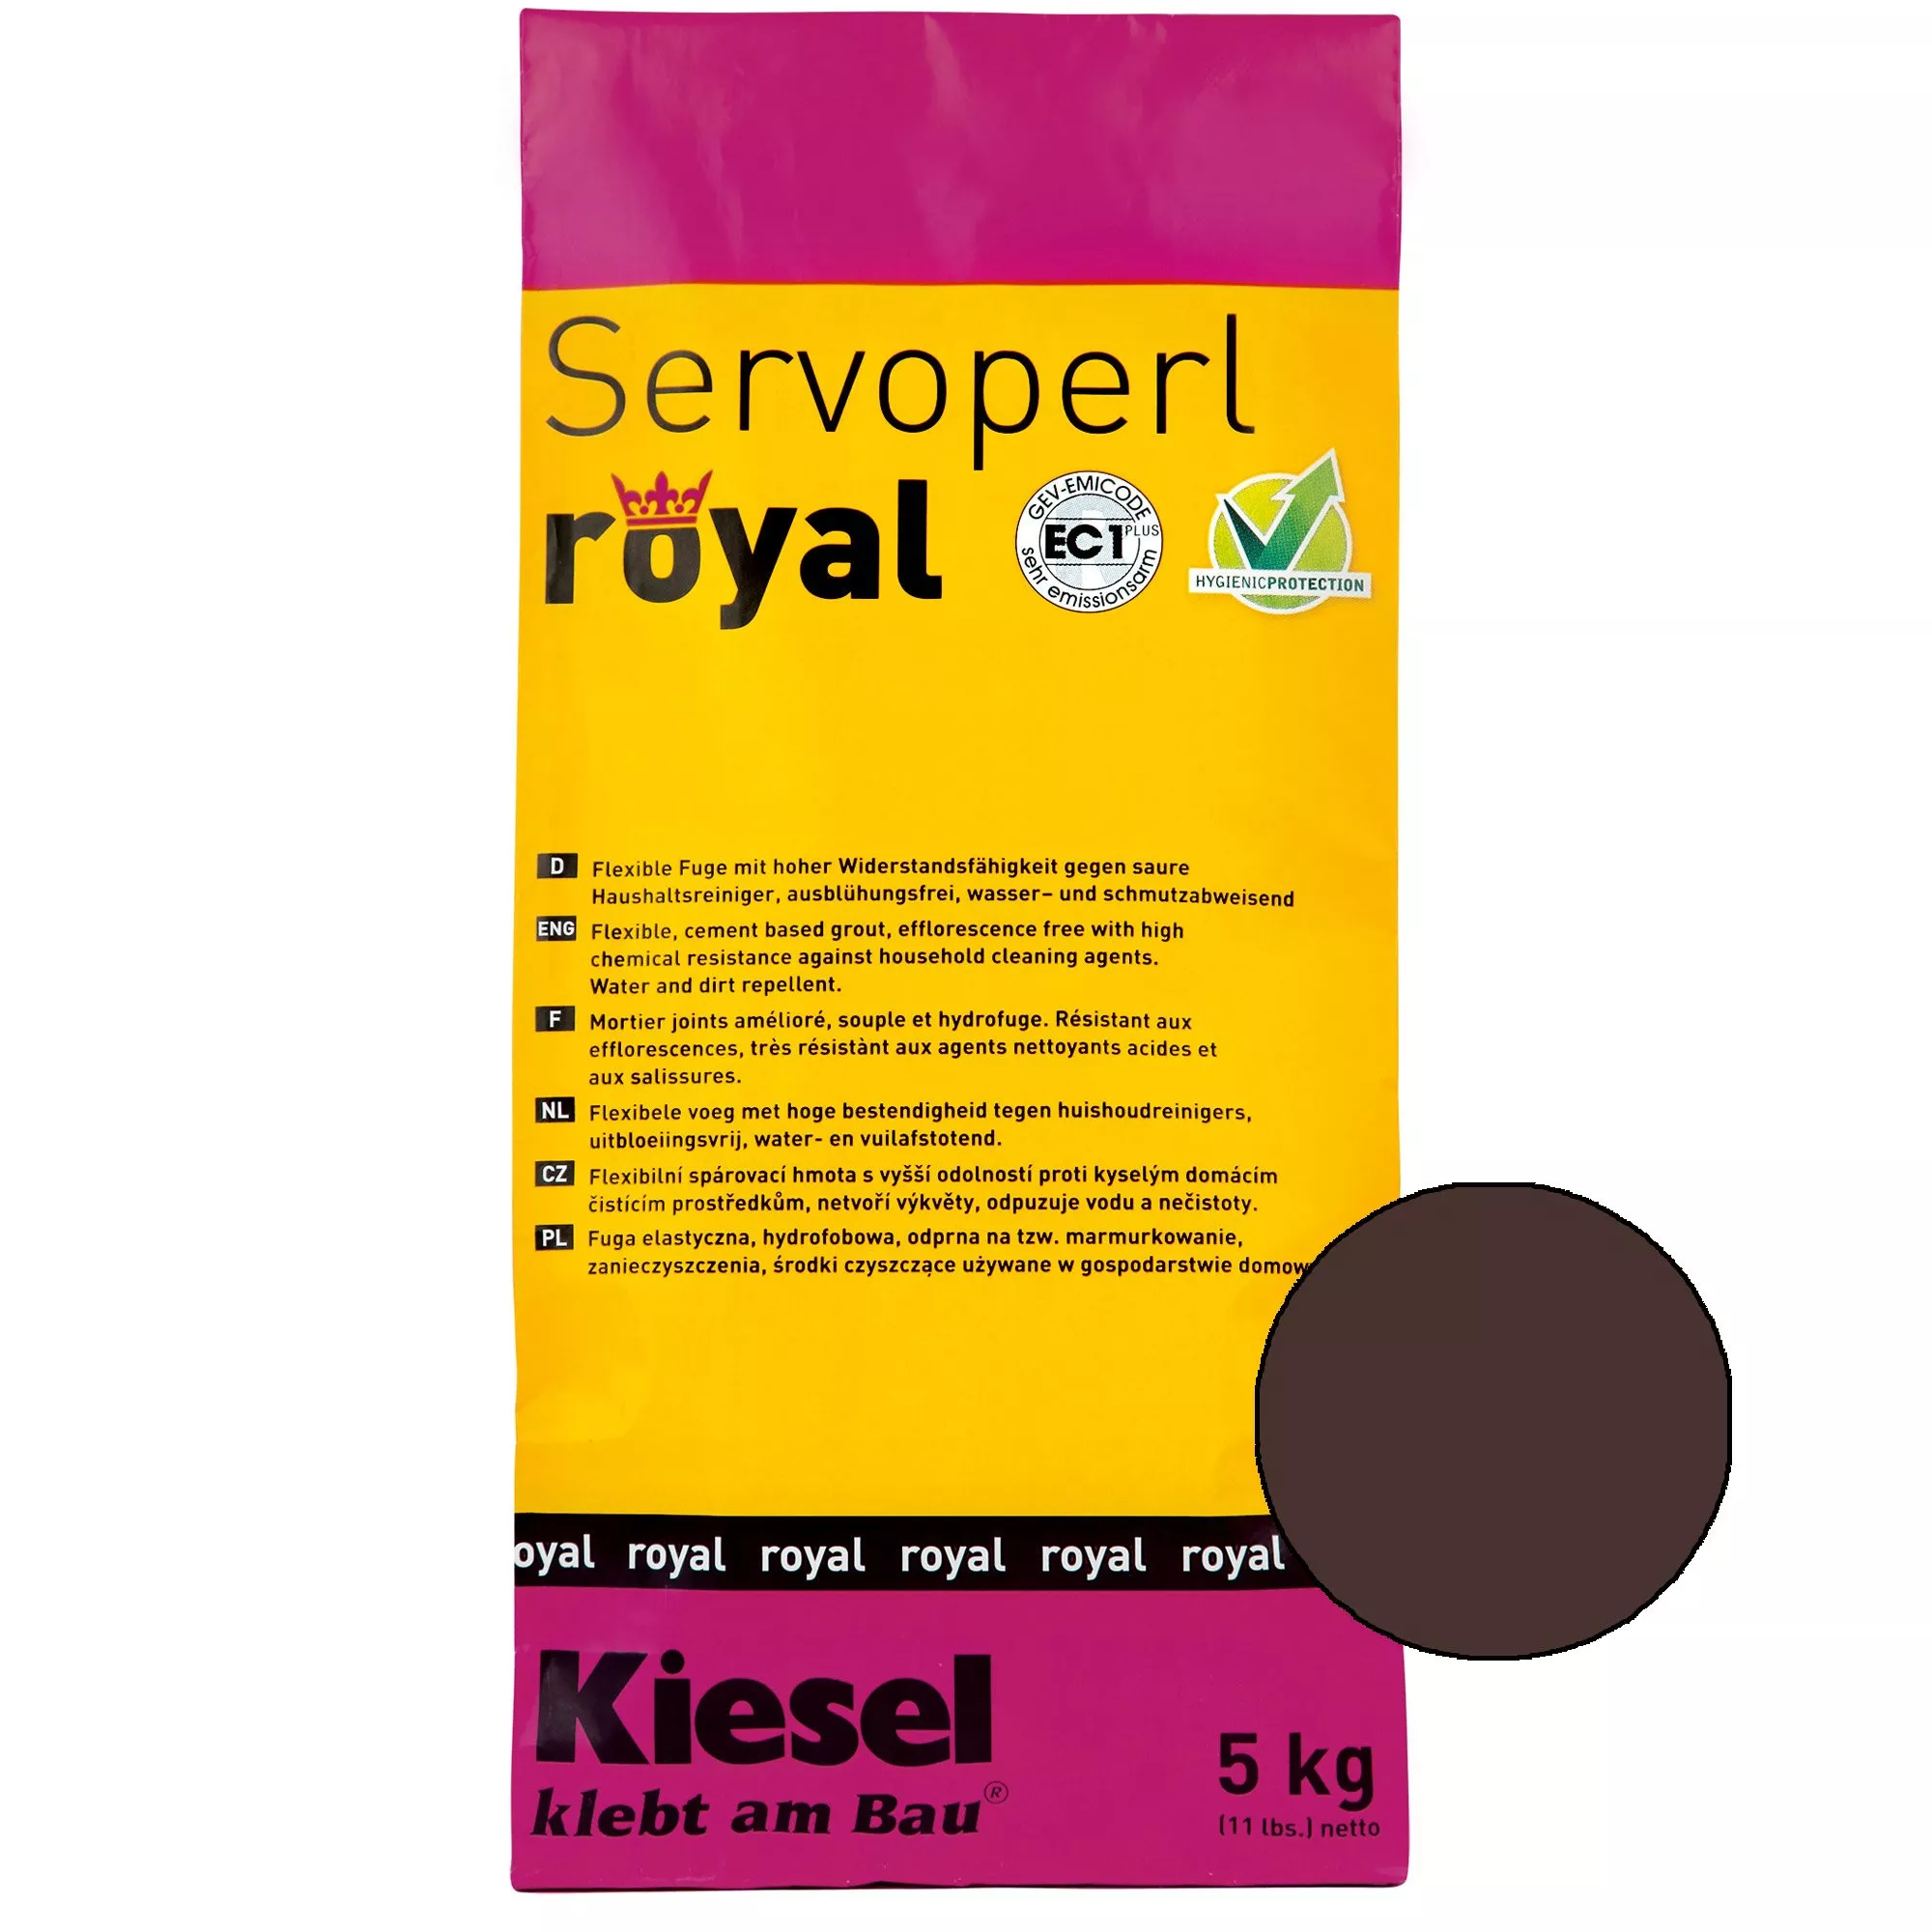 Kiesel Servoperl royal - Fleksibel, vann- og smussavvisende fuge